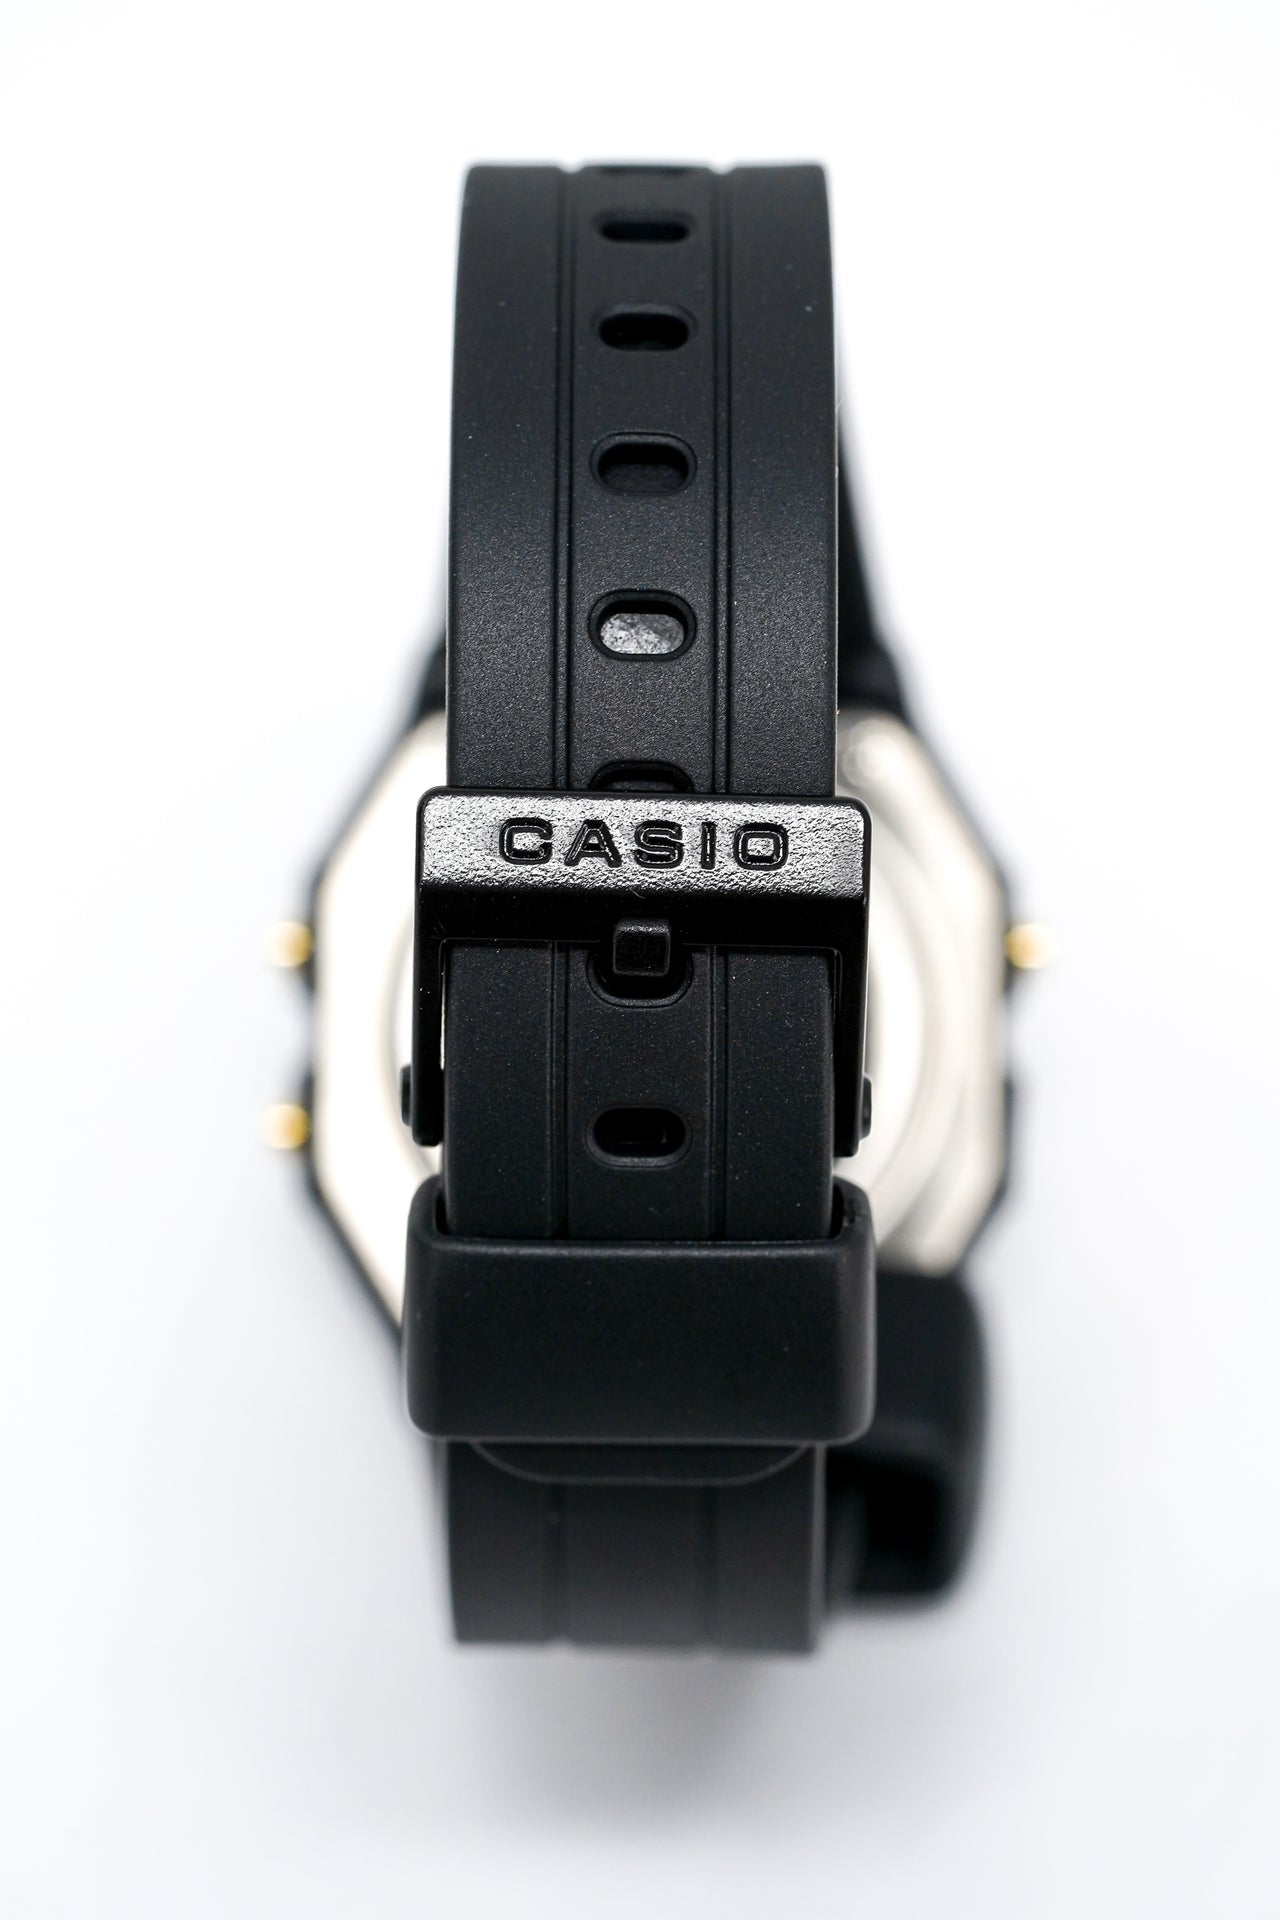  Casio F91W Digital Sports Watch : Clothing, Shoes & Jewelry